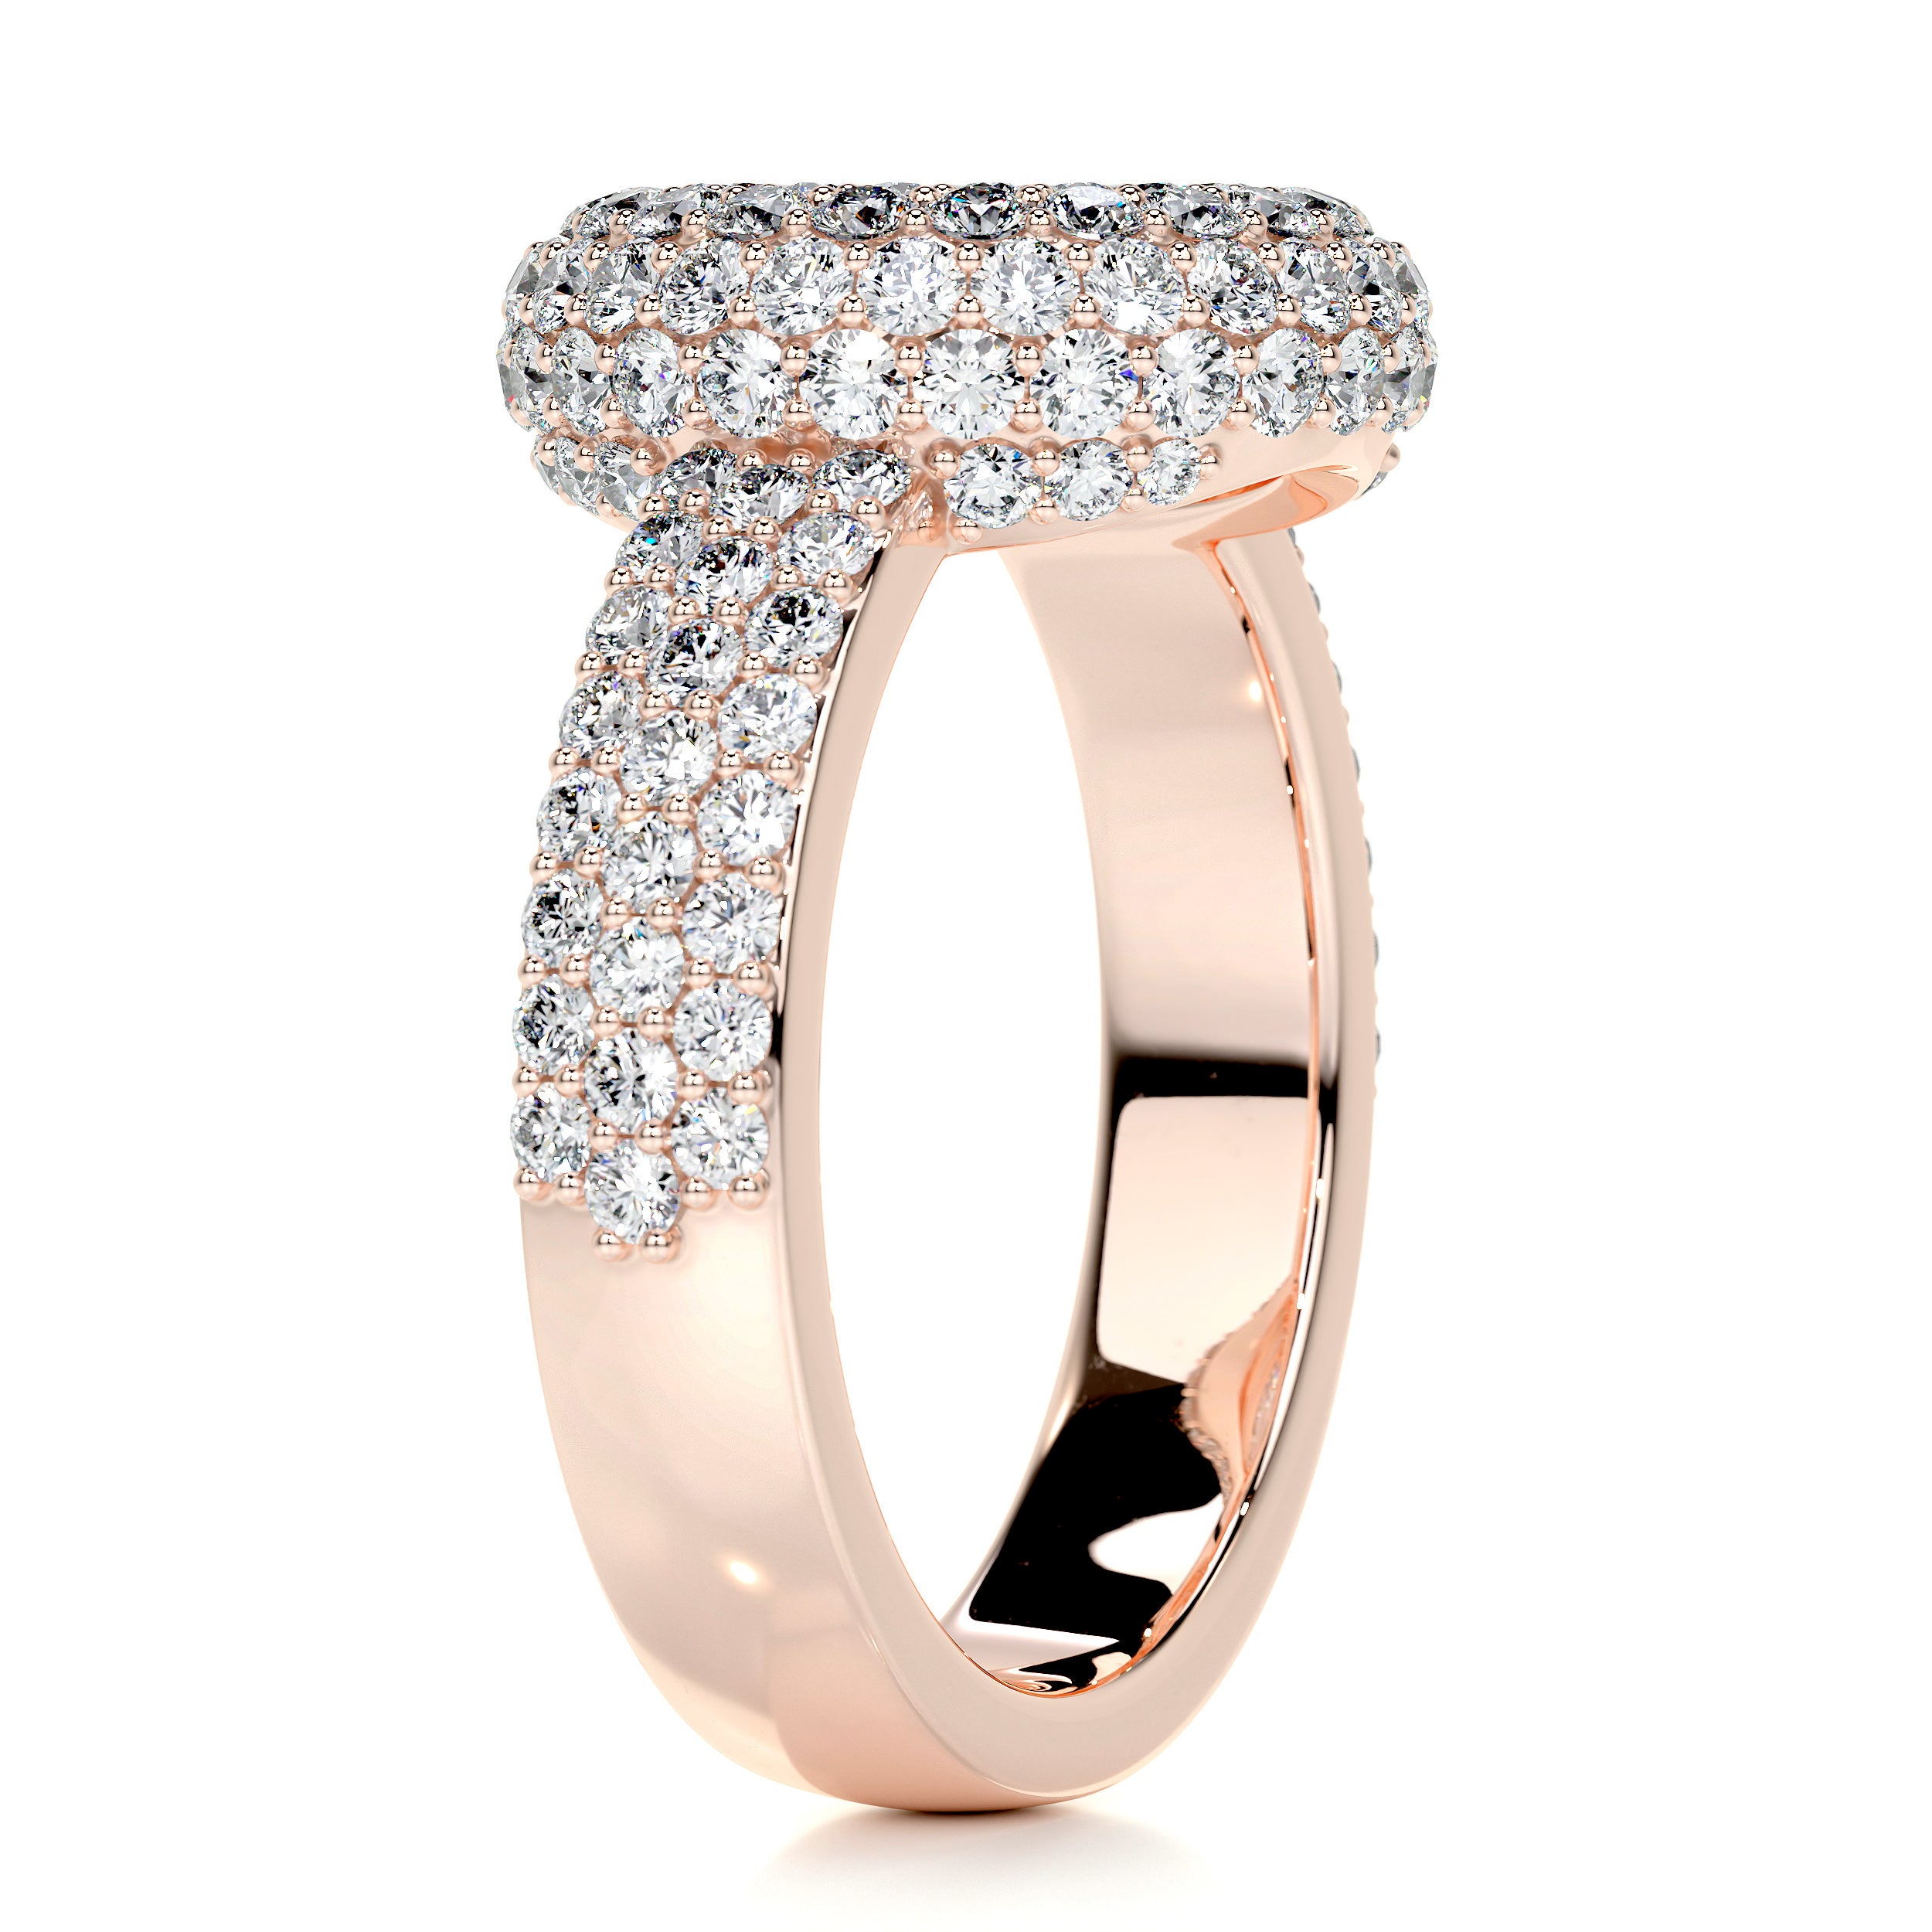 Reagan Diamond Engagement Ring   (2.25 Carat) -14K Rose Gold